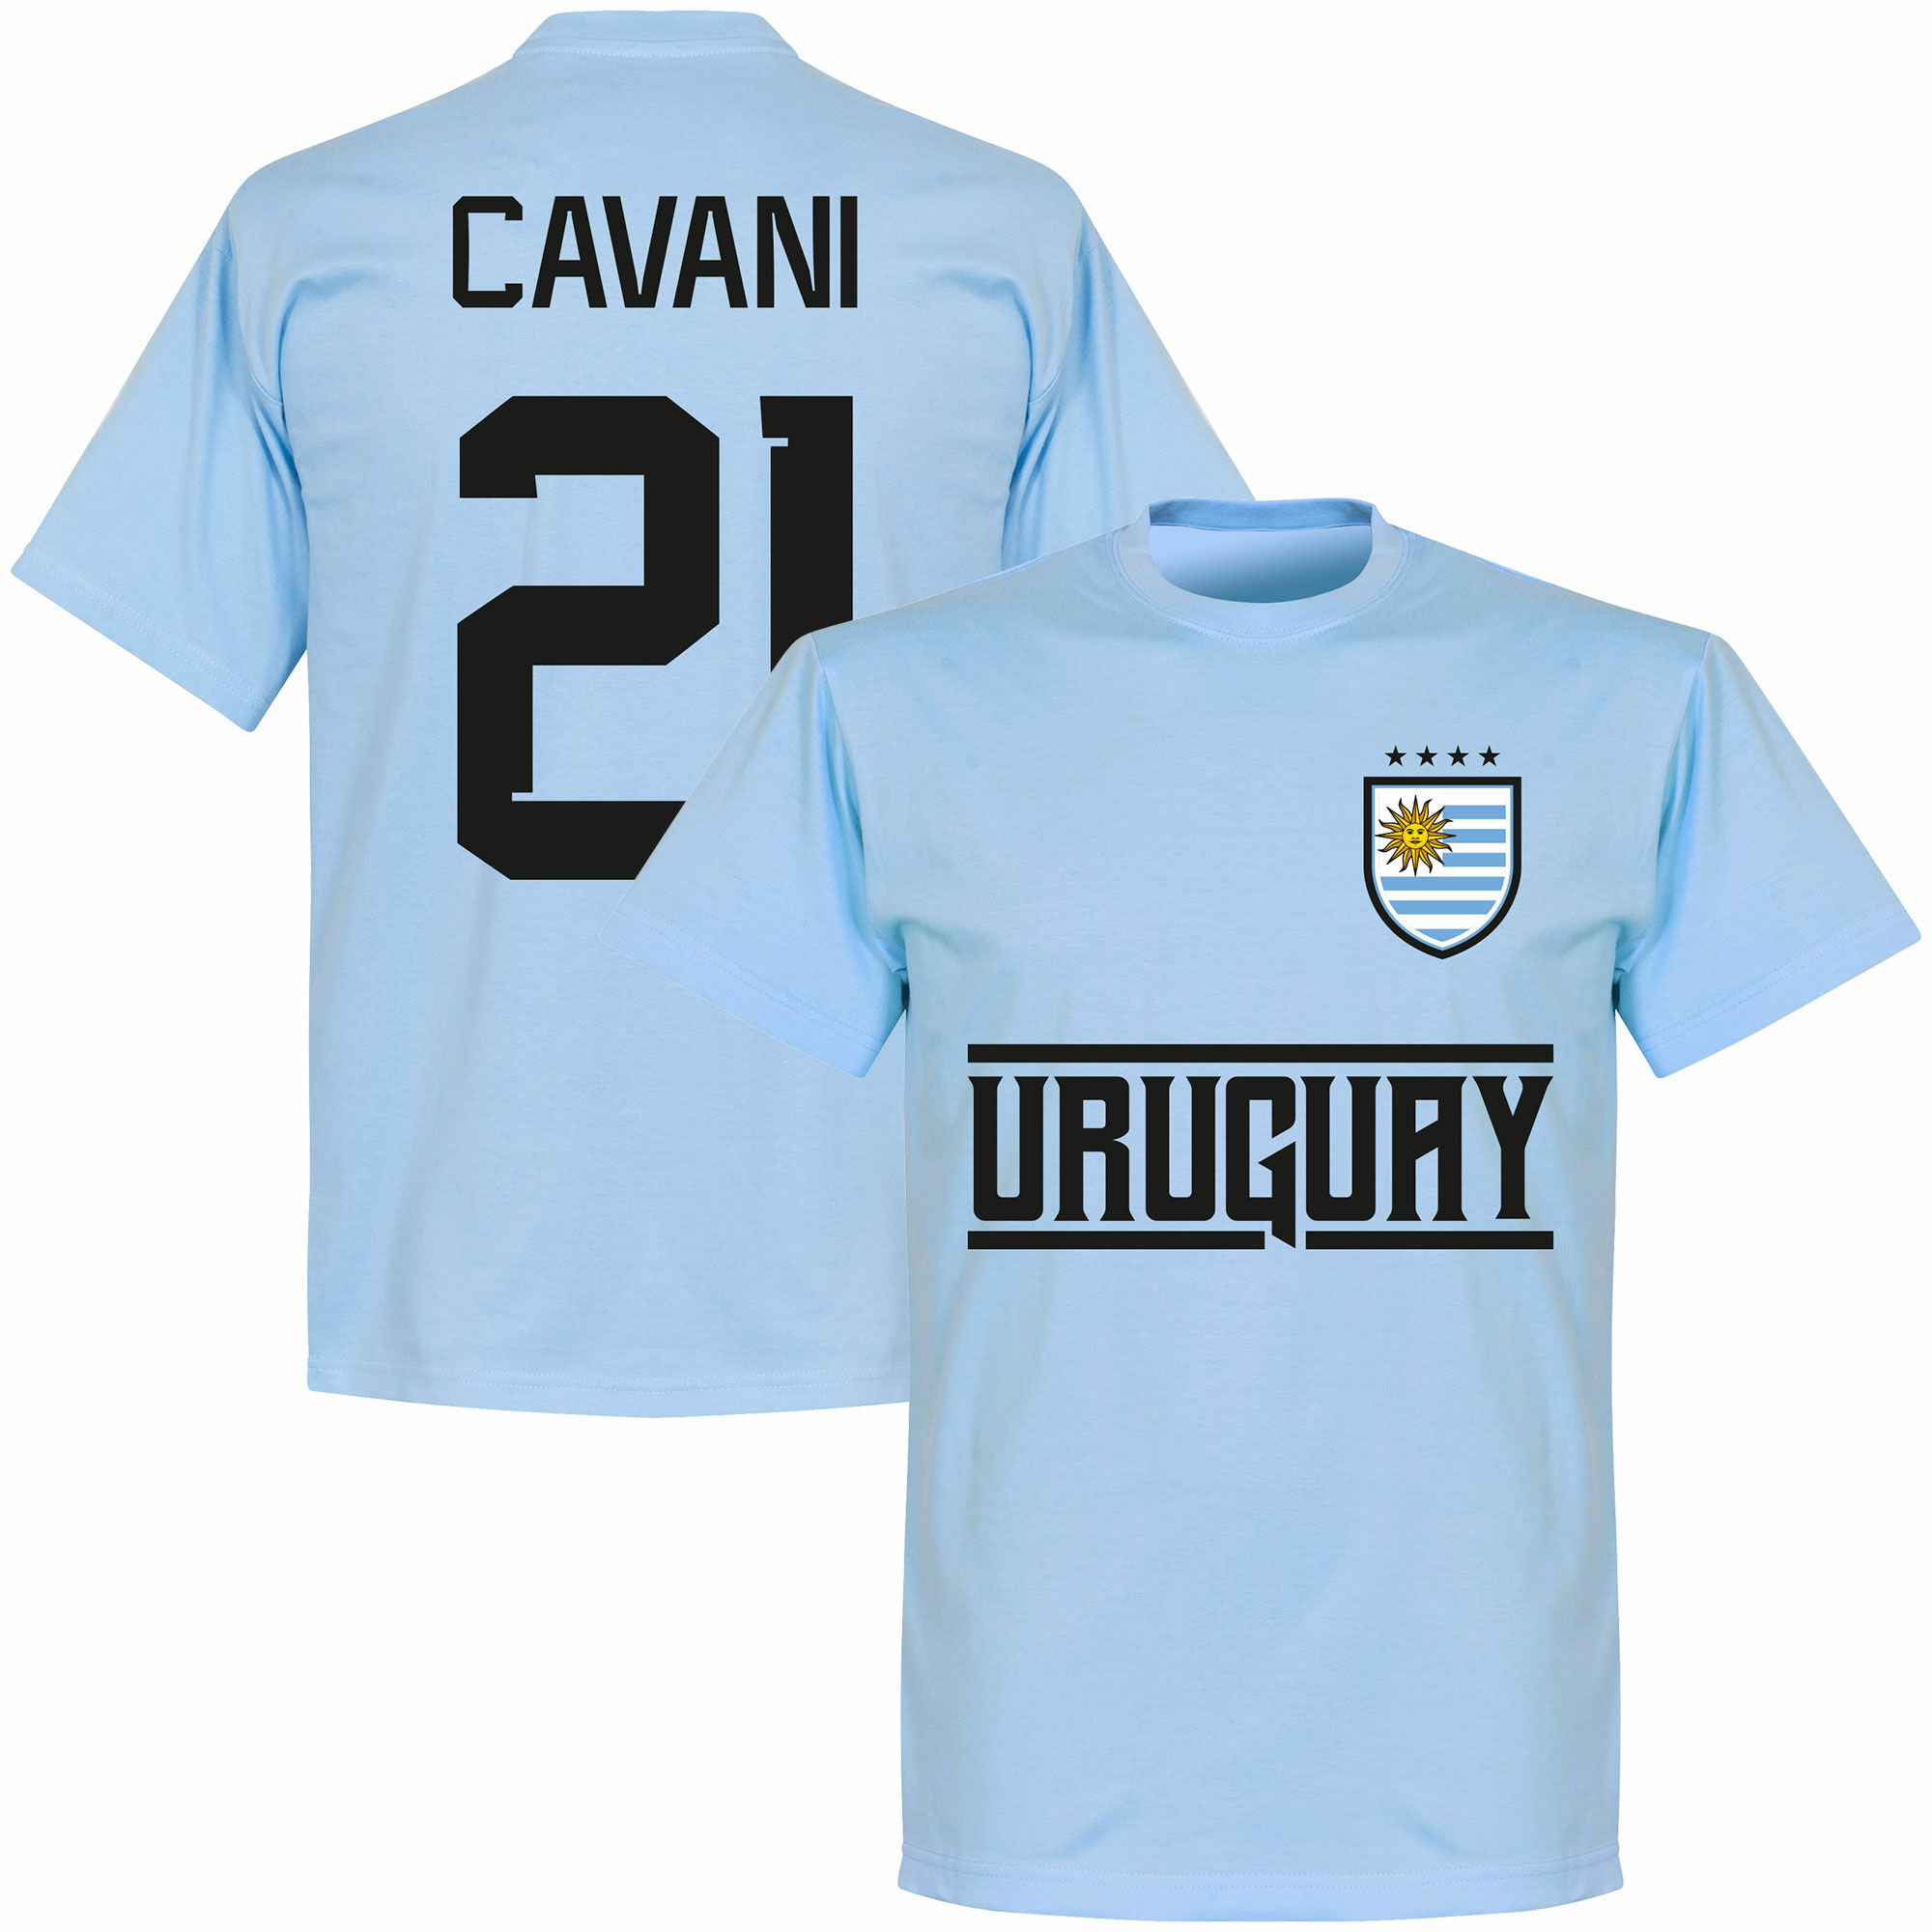 Uruguay - Tričko dětské - Edinson Cavani, číslo 21, modré